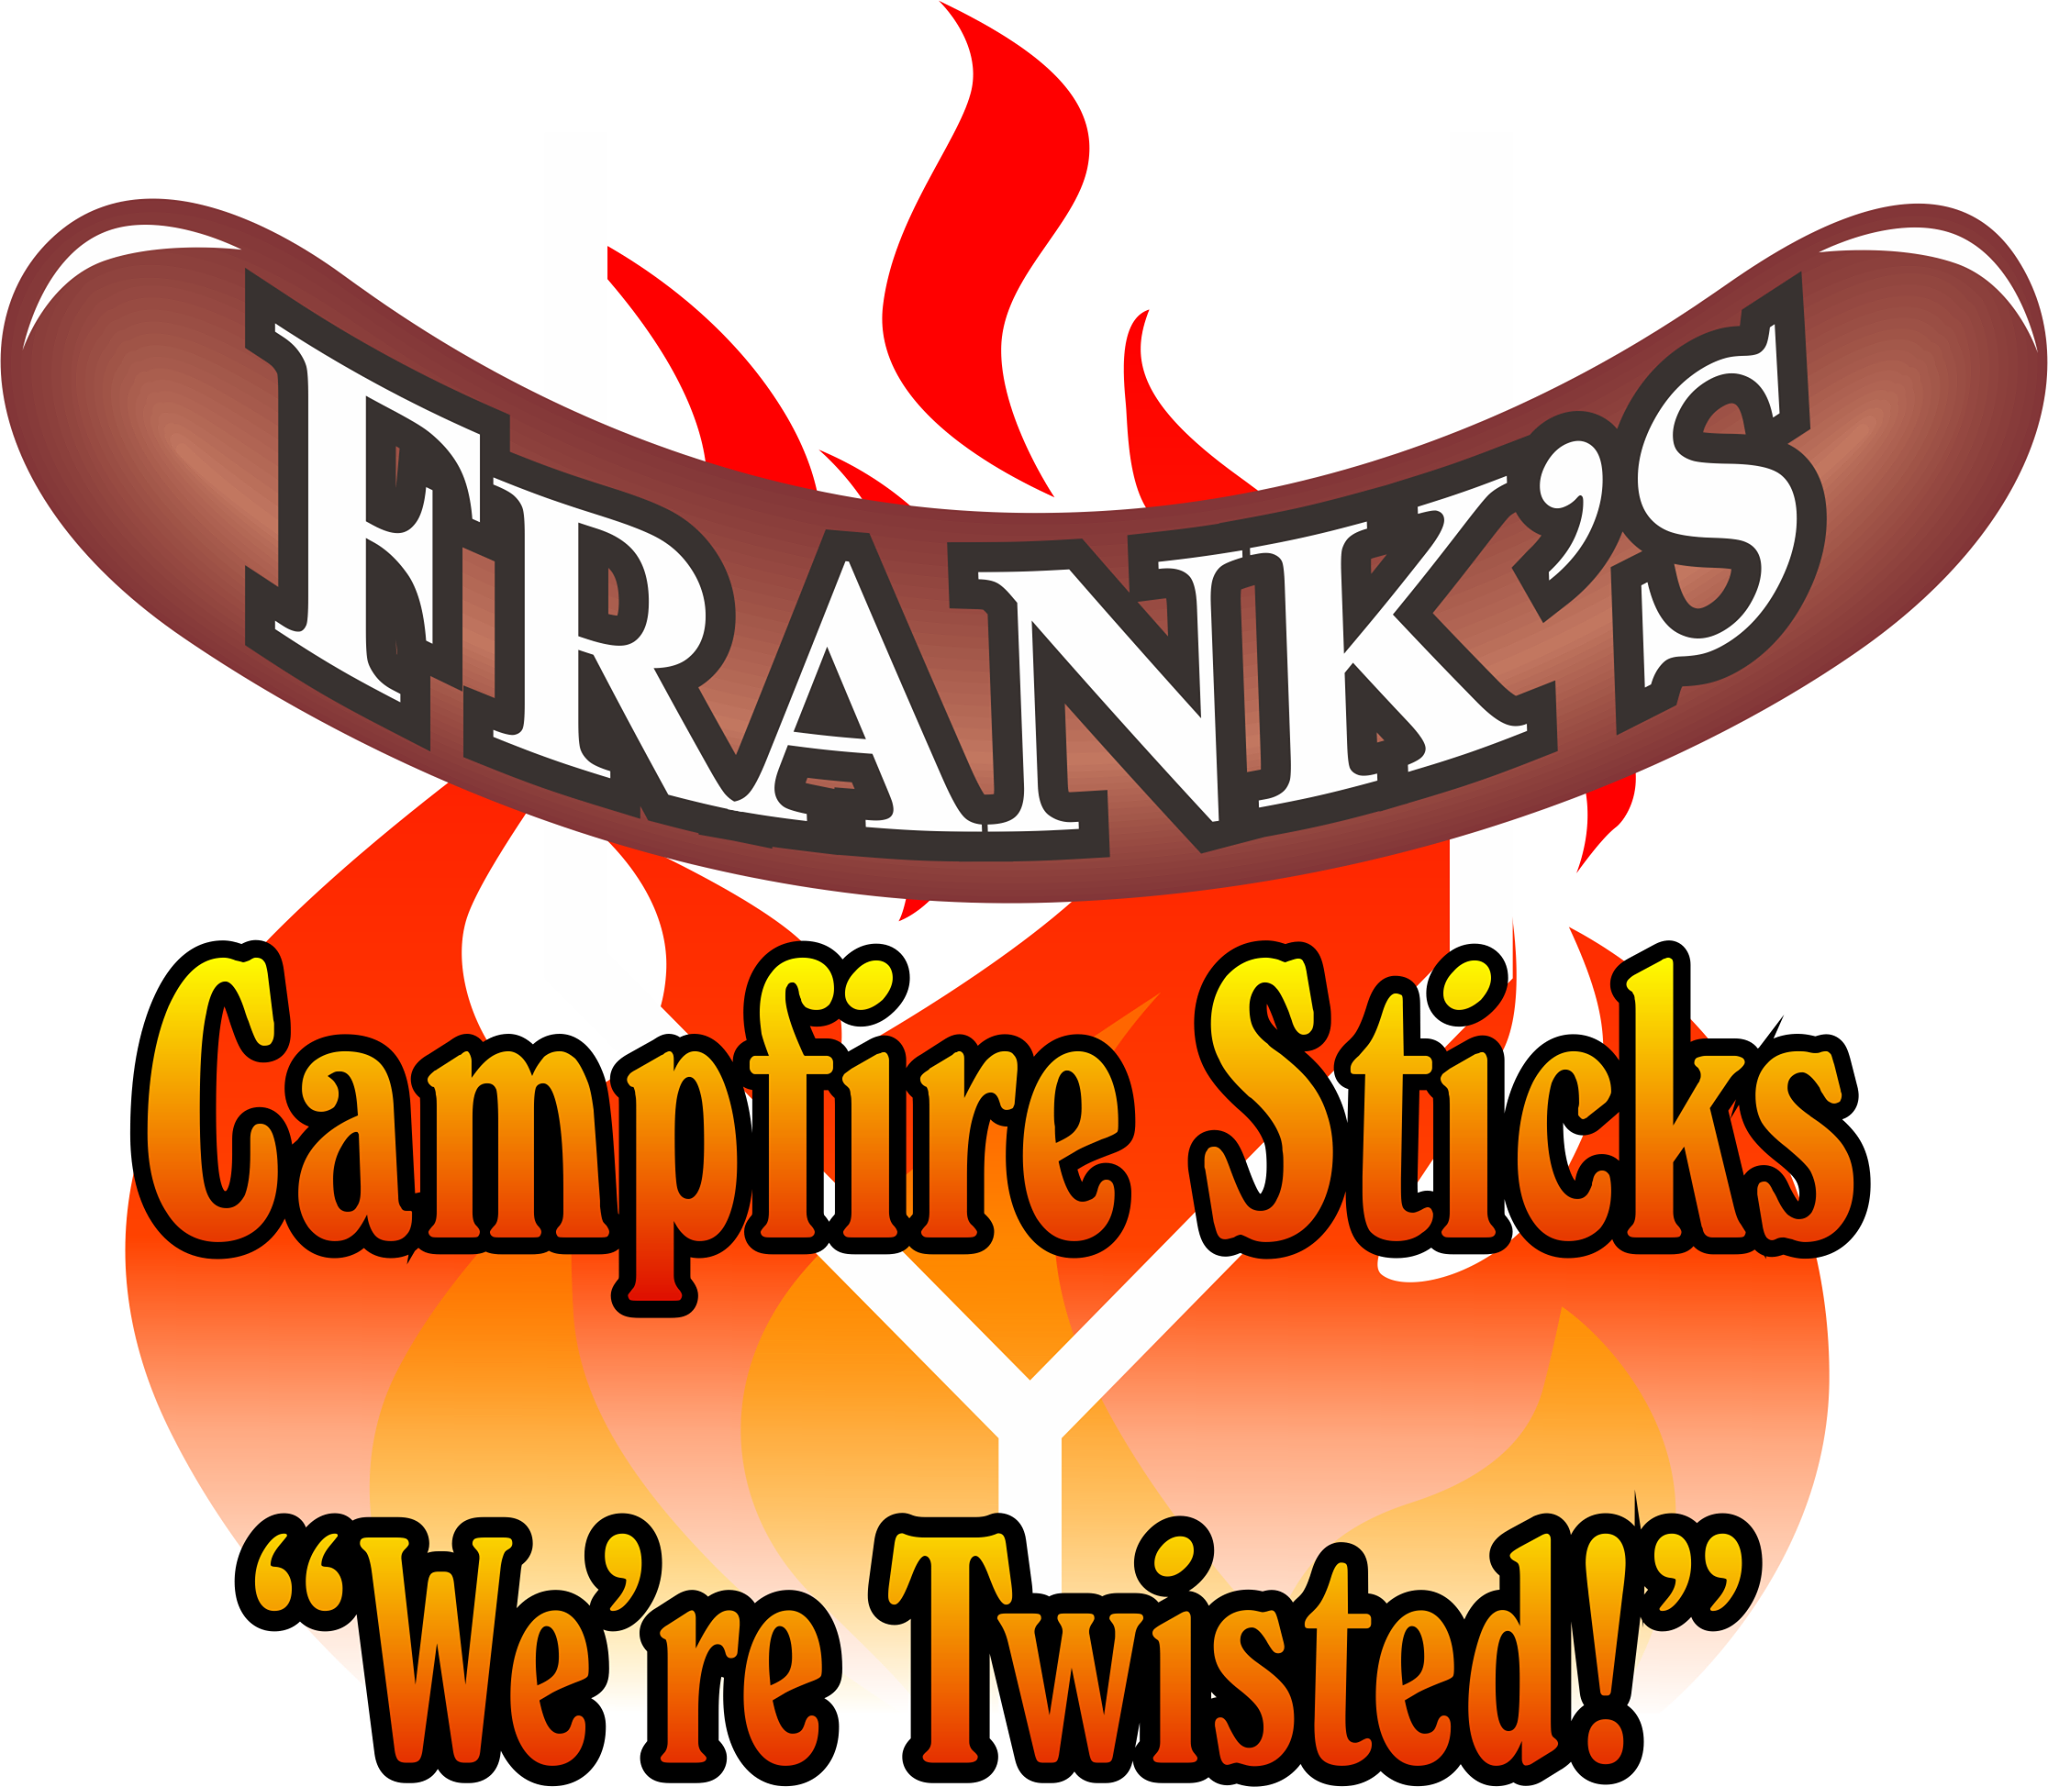 Franks campfire stick